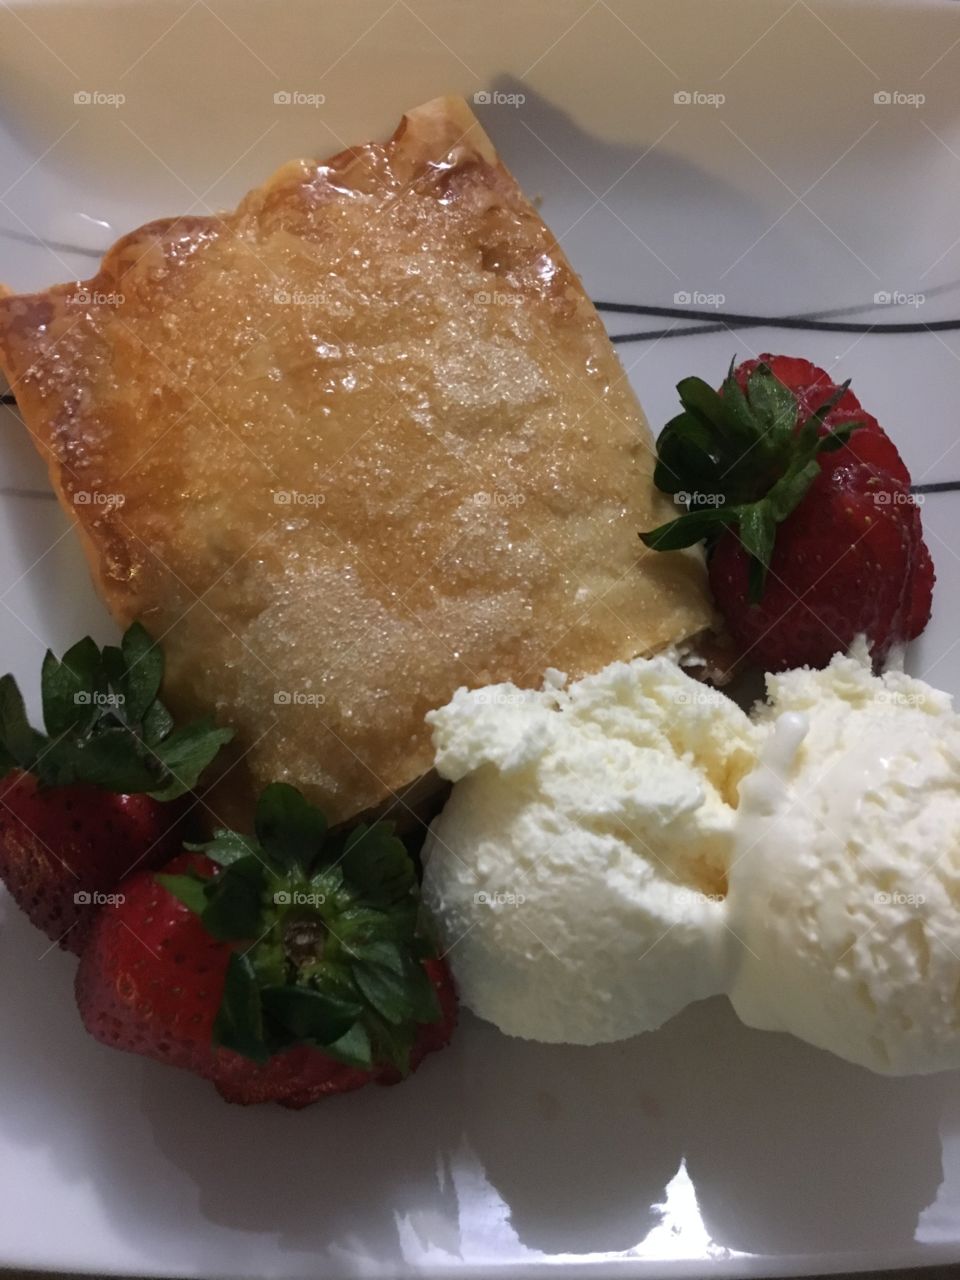 Apple tart, strawberries and ice cream